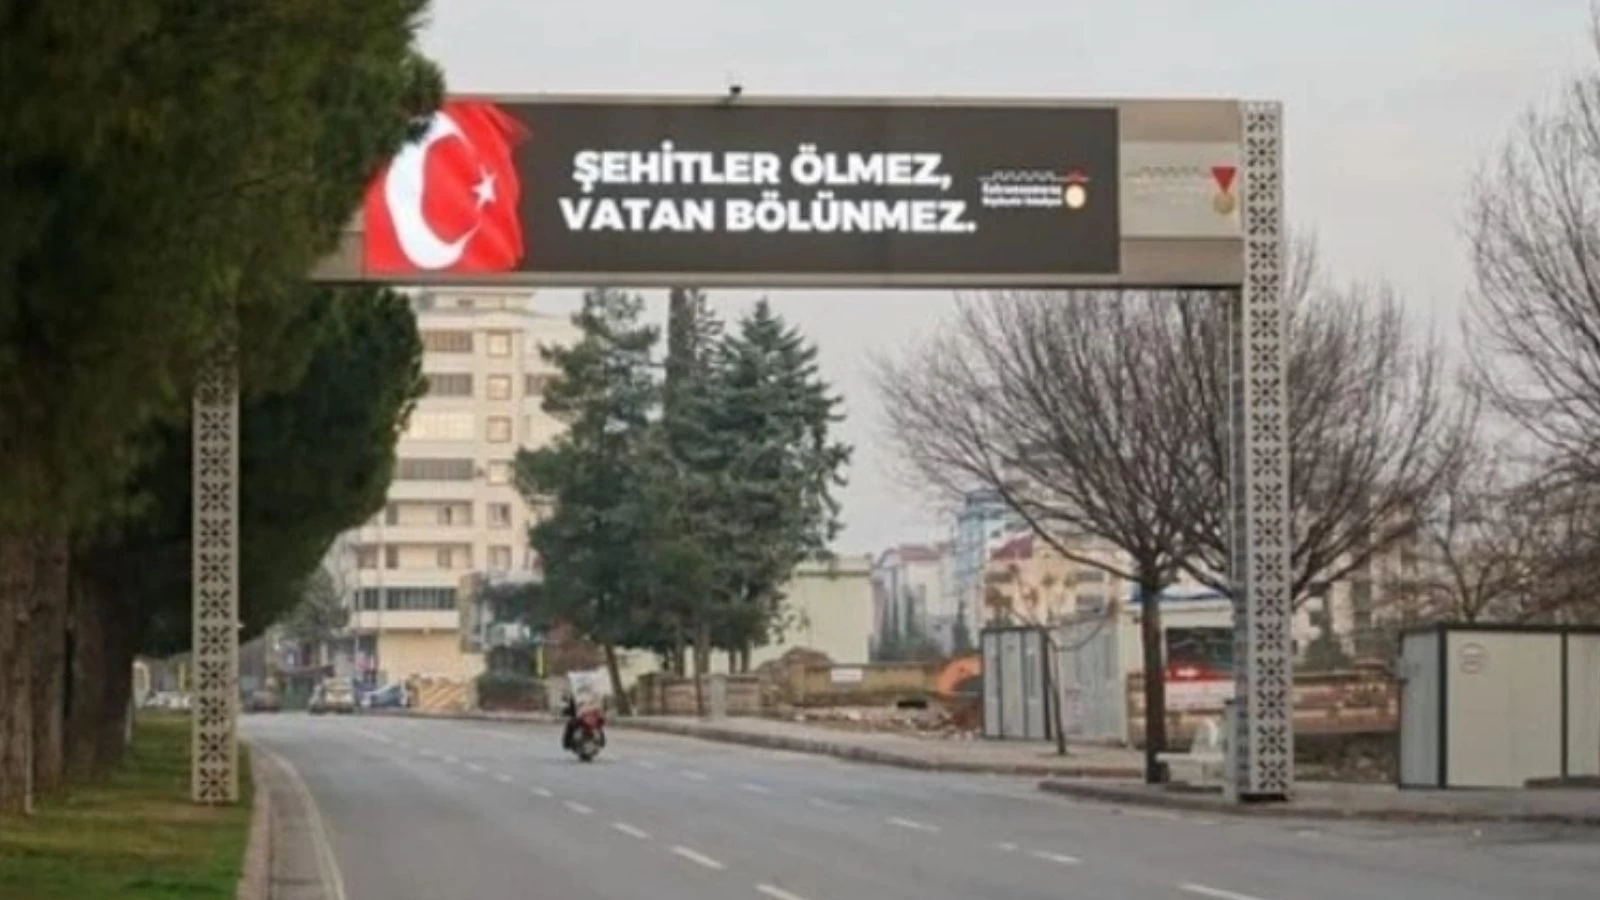 Kahramanmaraş ve Sivas Belediyesi, Pençe-Kilit Harekatı'ndaki çatışmada şehit olan 9 askerimiz için şehrin dört bir yanındaki led tabelalara özel bir mesaj yansıttı. Görsellerde, duygu yüklü bir ifadeyle "Şehitler ölmez, vatan bölünmez" mesajı yer aldı.